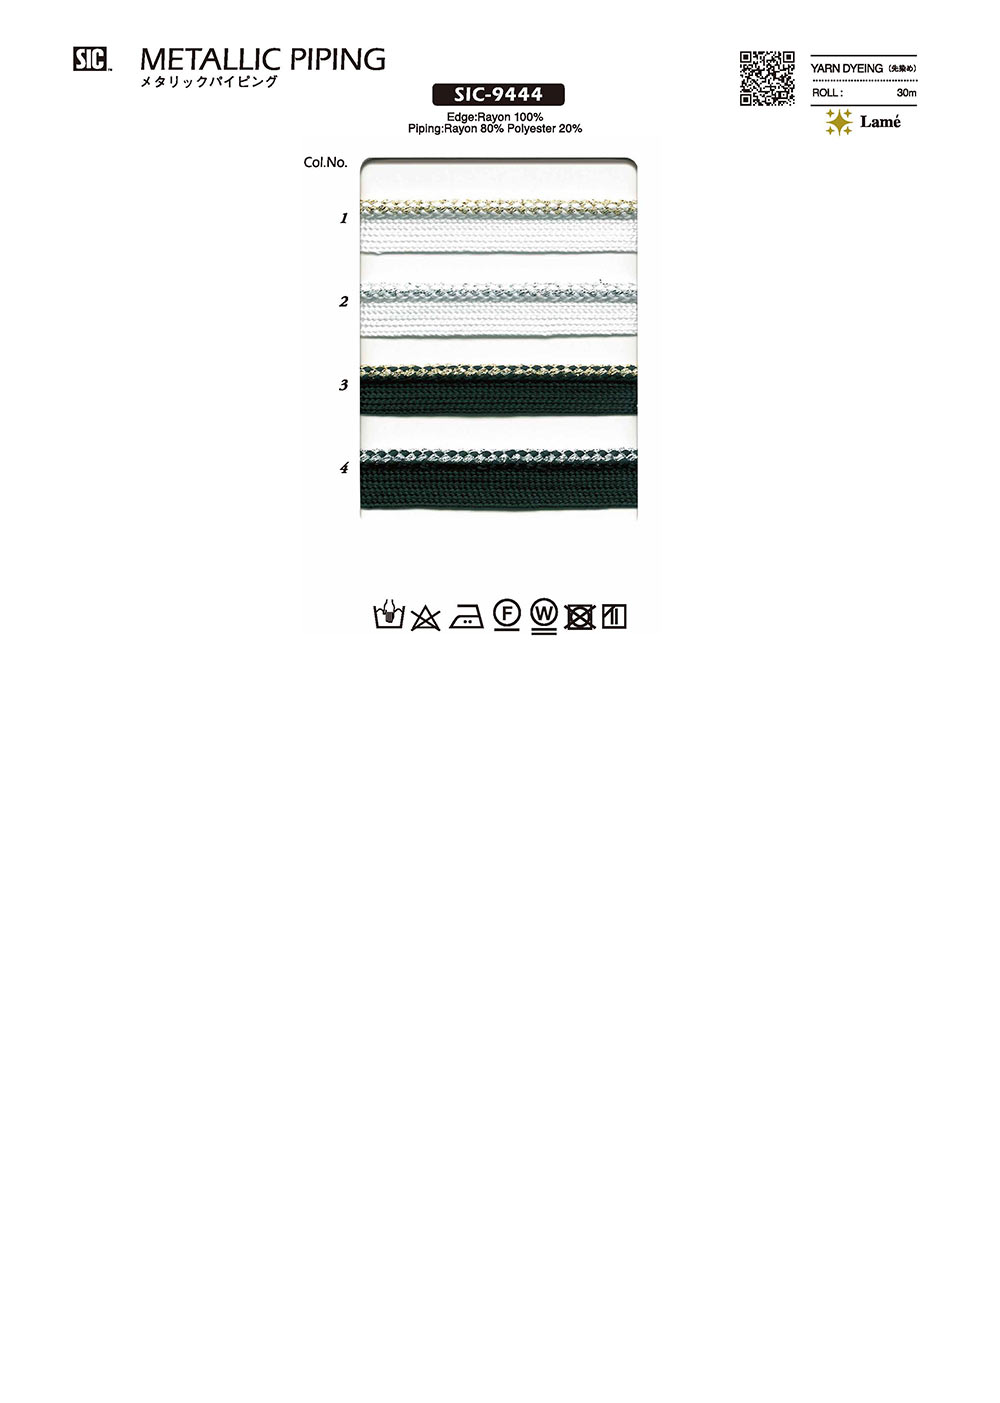 SIC-9444 メタリックパイピングテープ[リボン・テープ・コード] SHINDO(SIC)